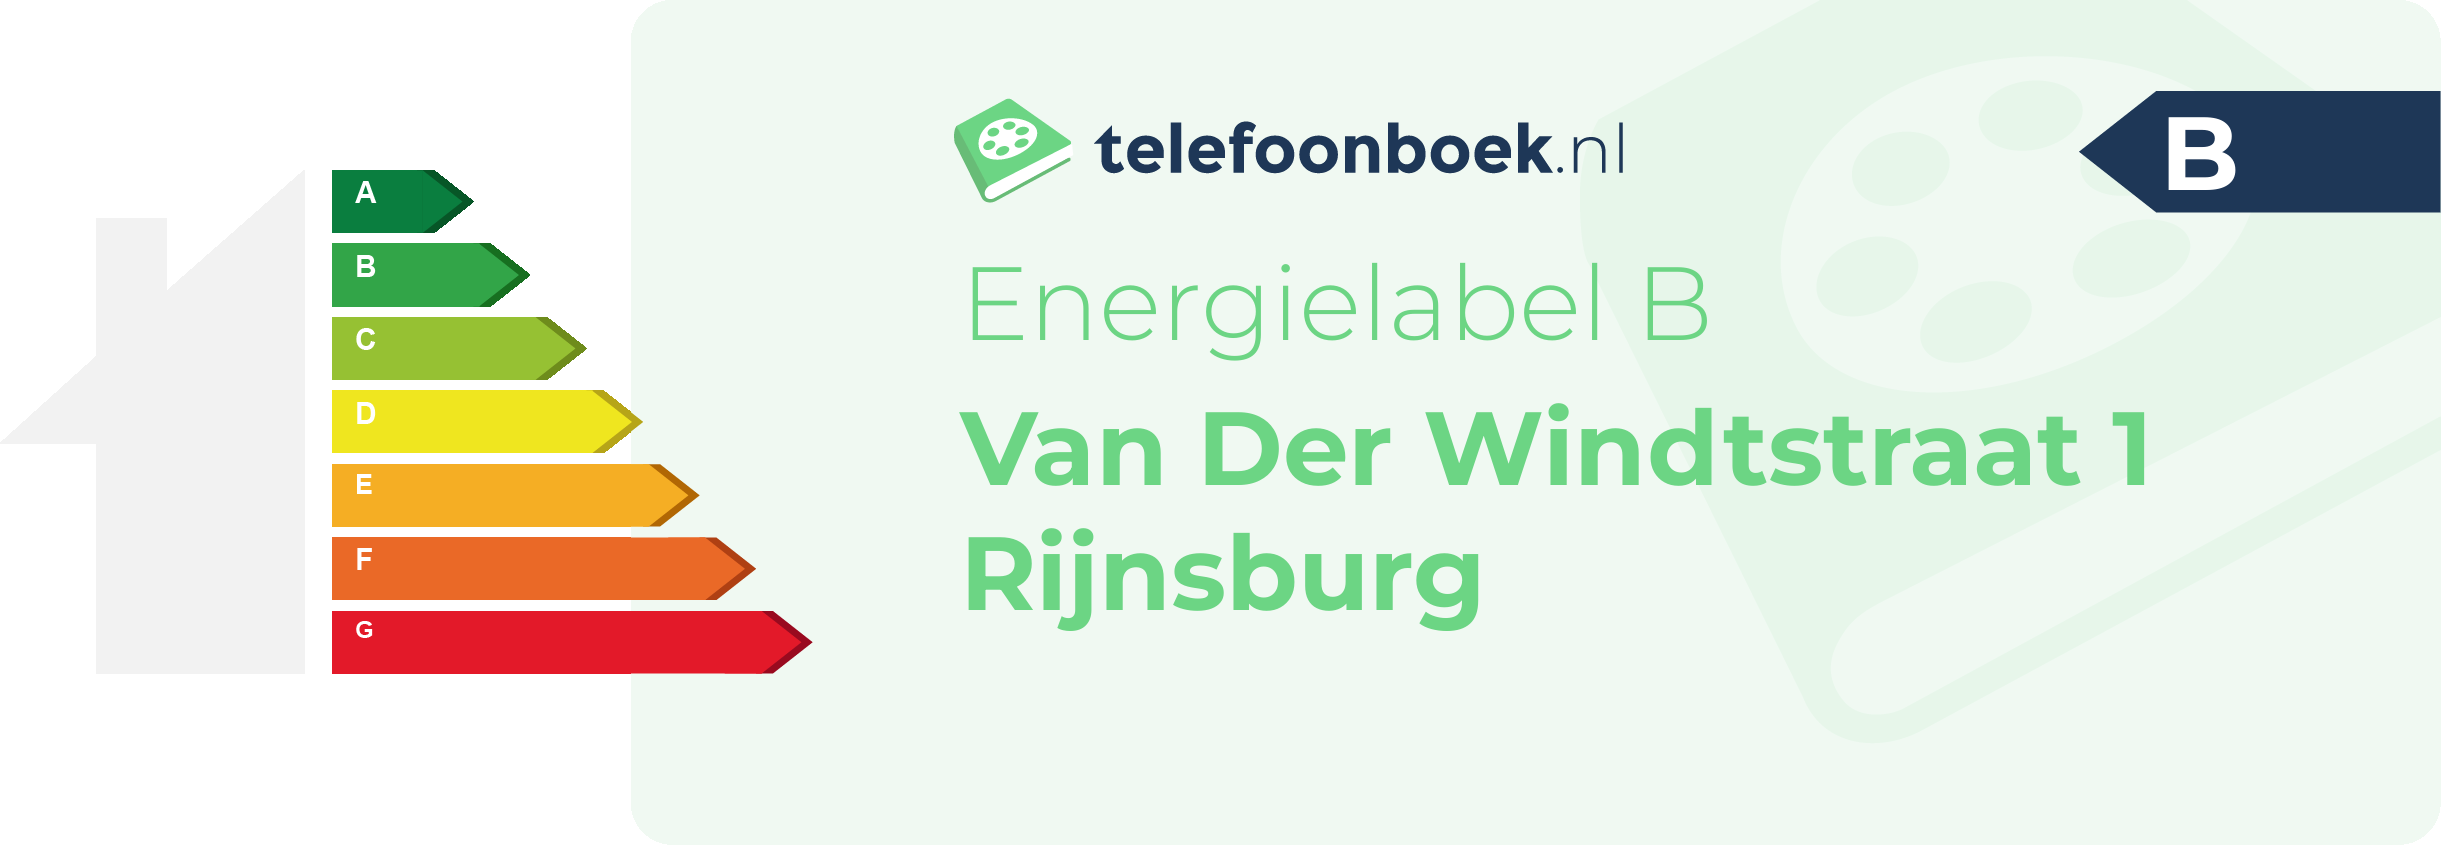 Energielabel Van Der Windtstraat 1 Rijnsburg